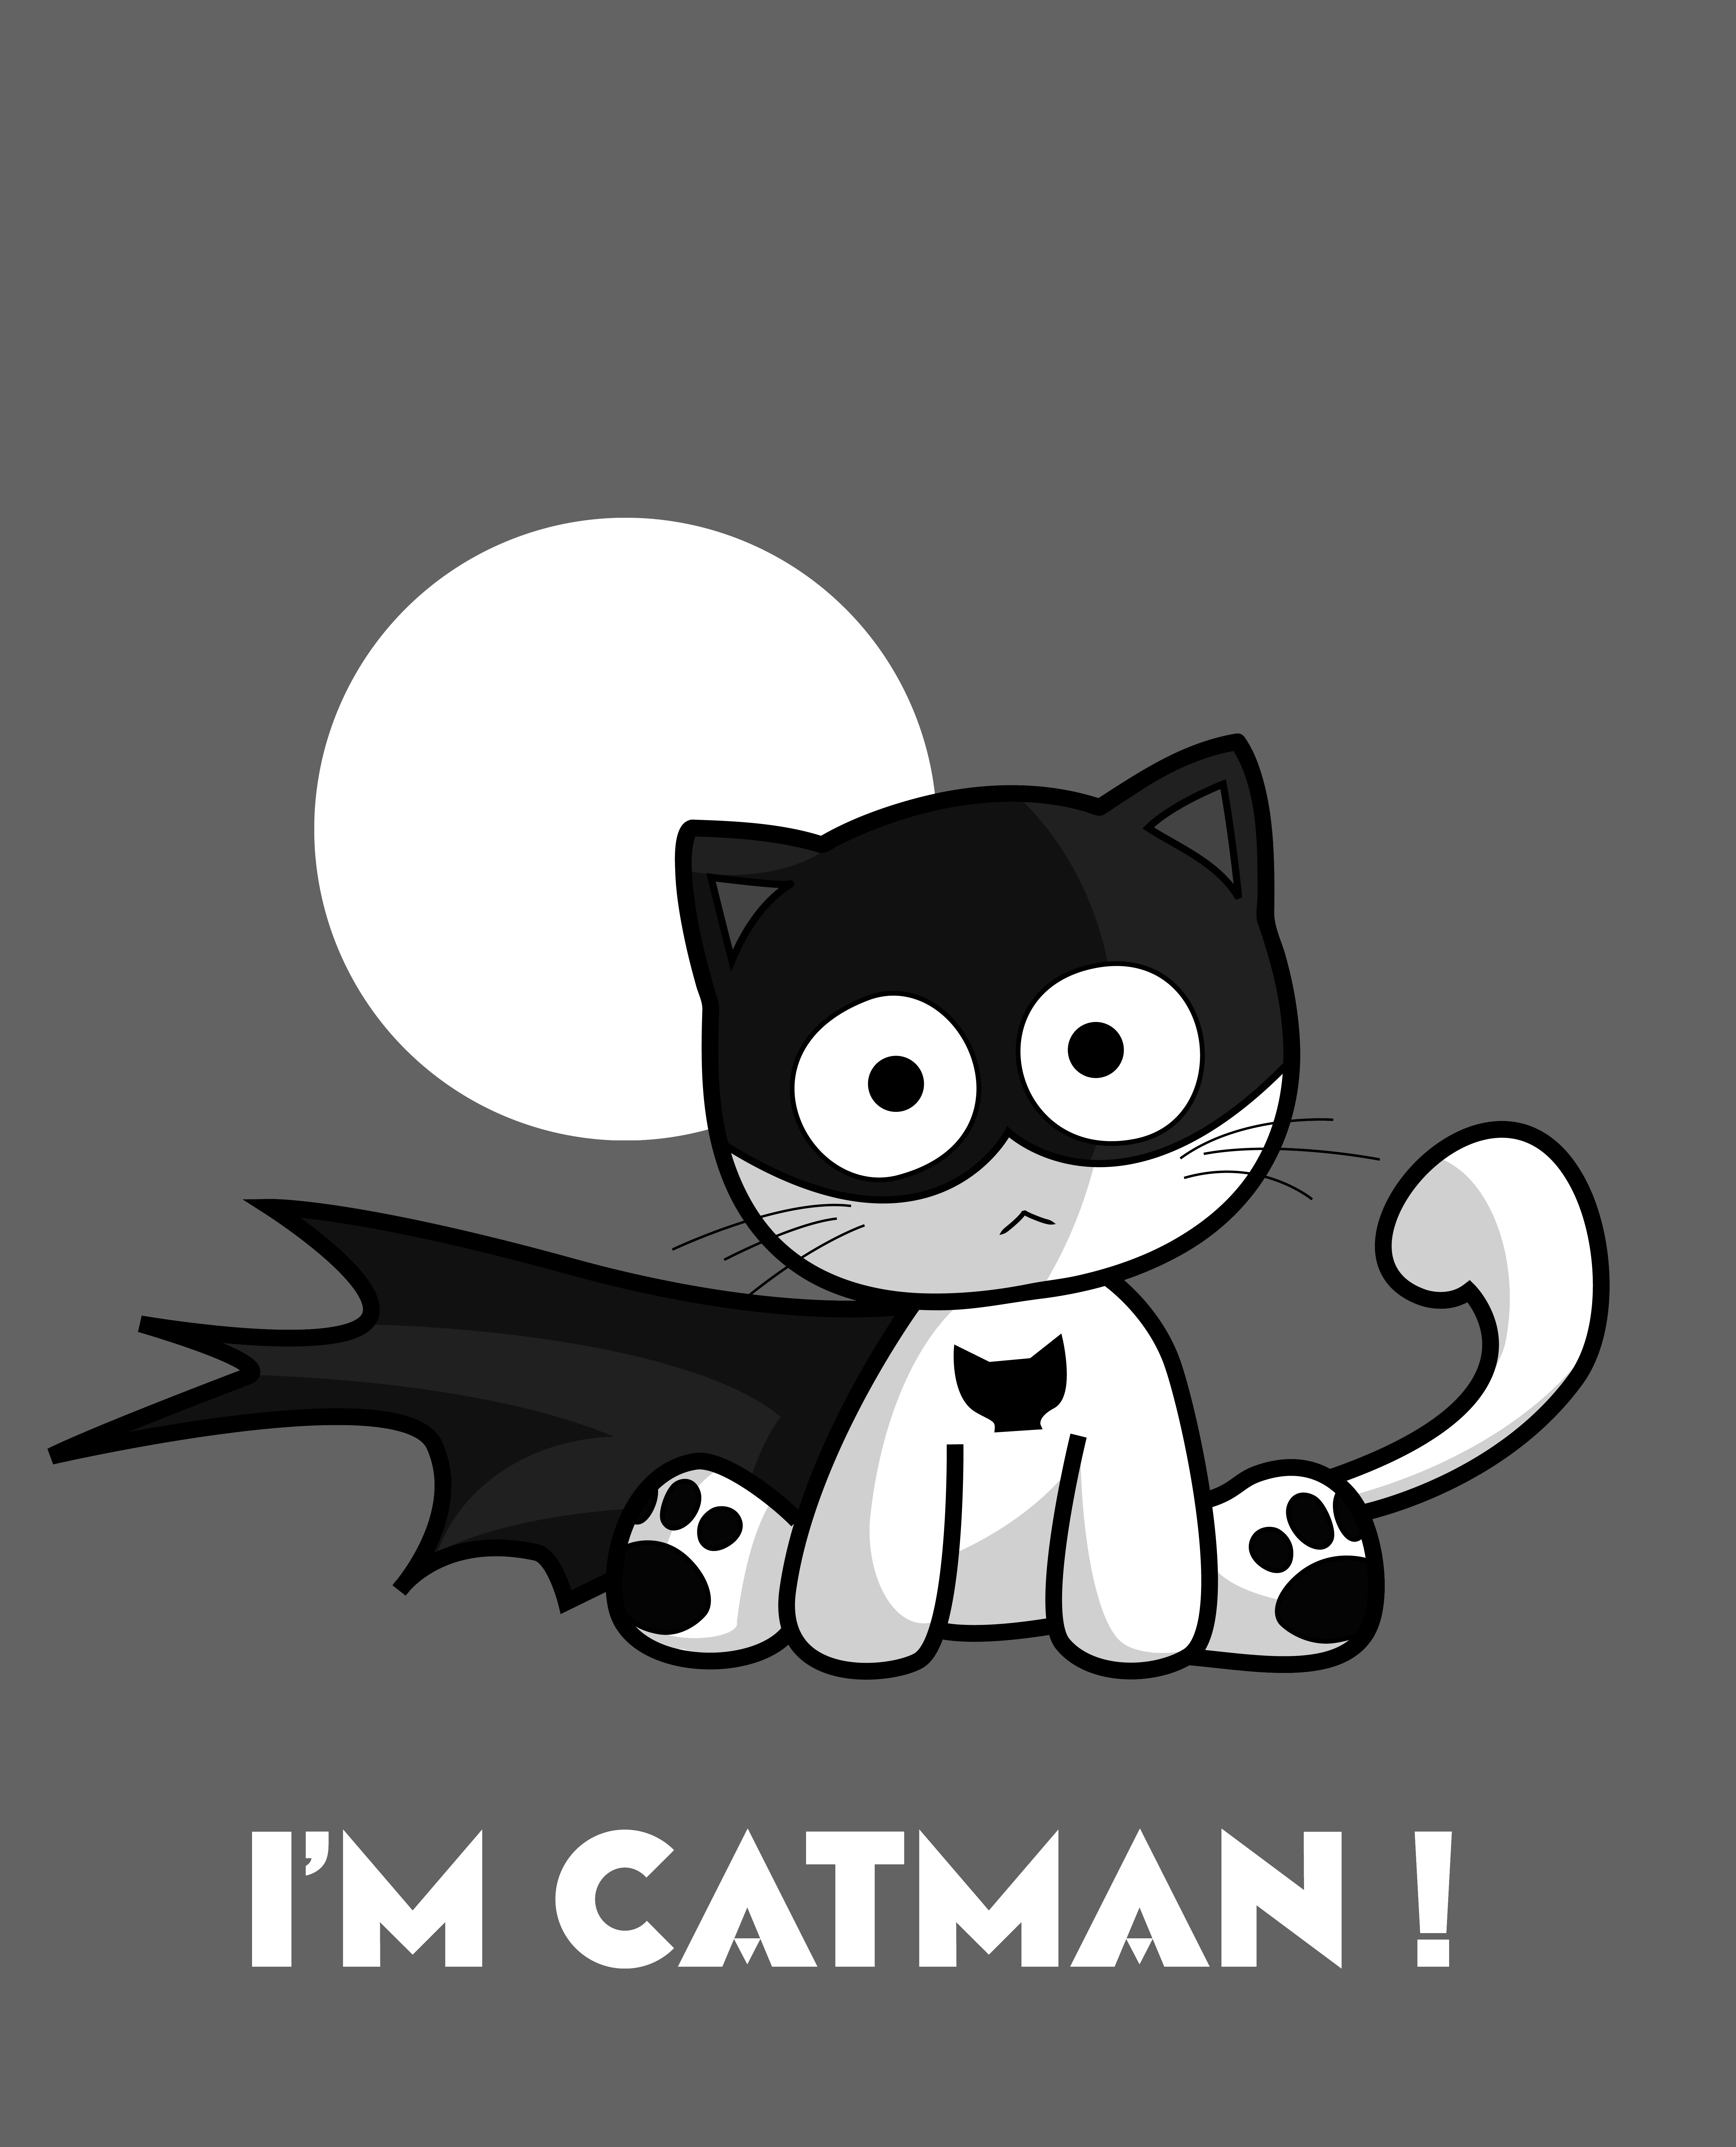 I’m Catman!